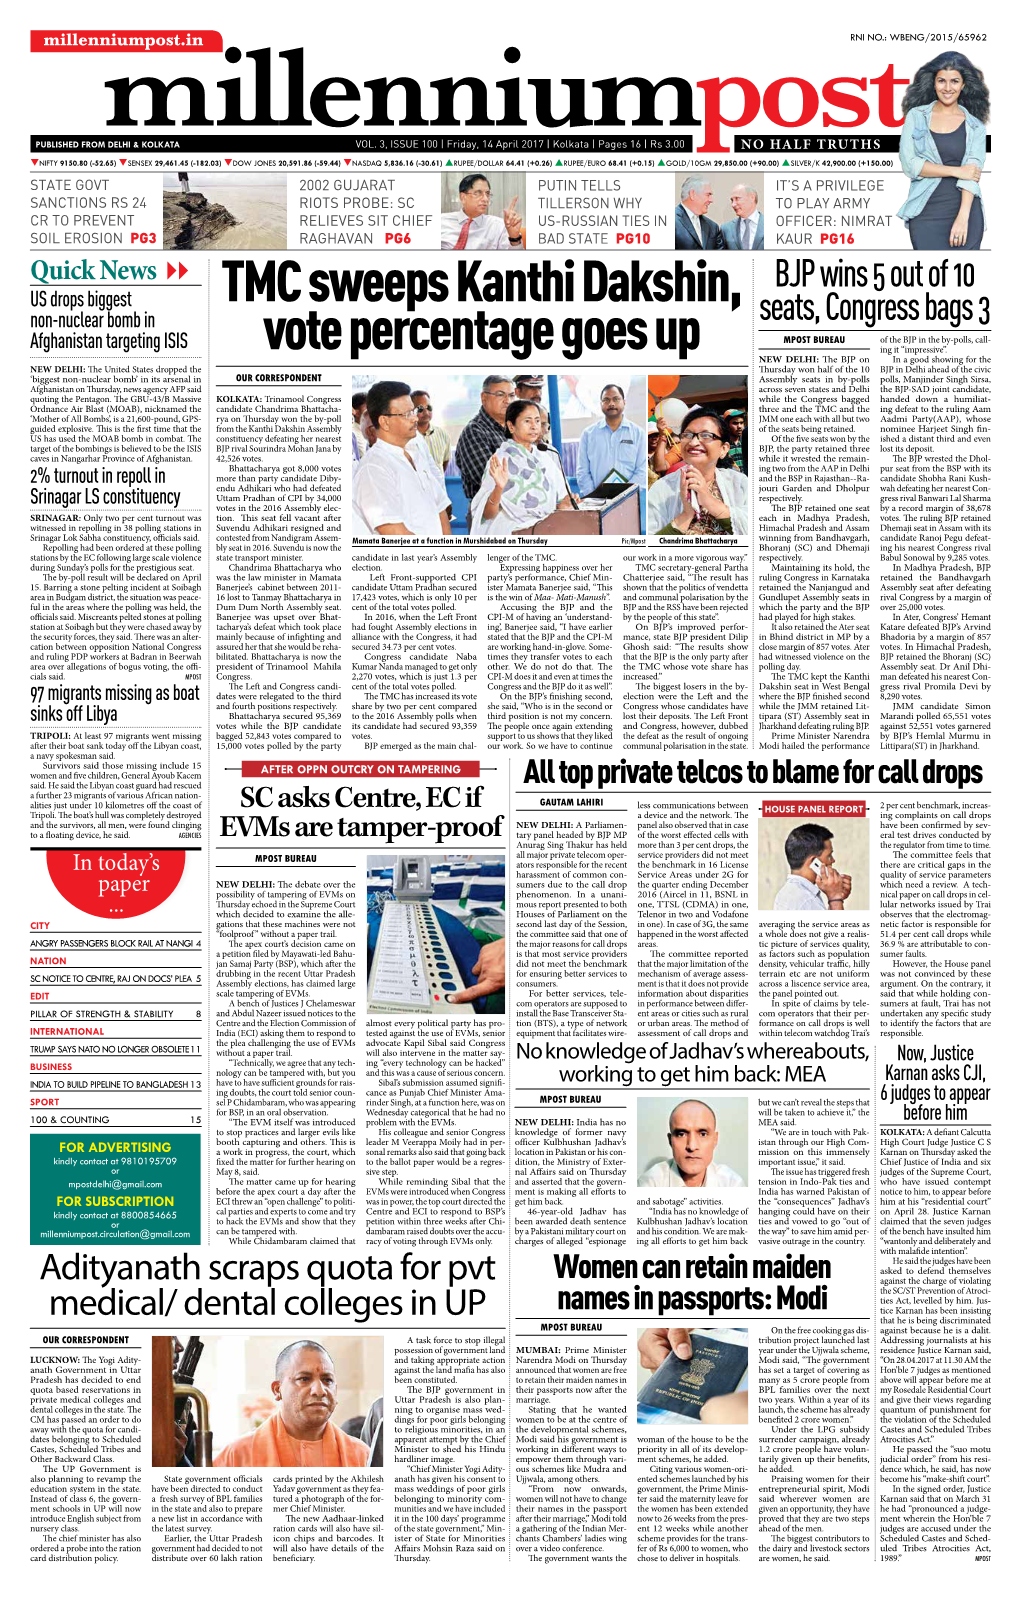 TMC Sweeps Kanthi Dakshin, Vote Percentage Goes Up